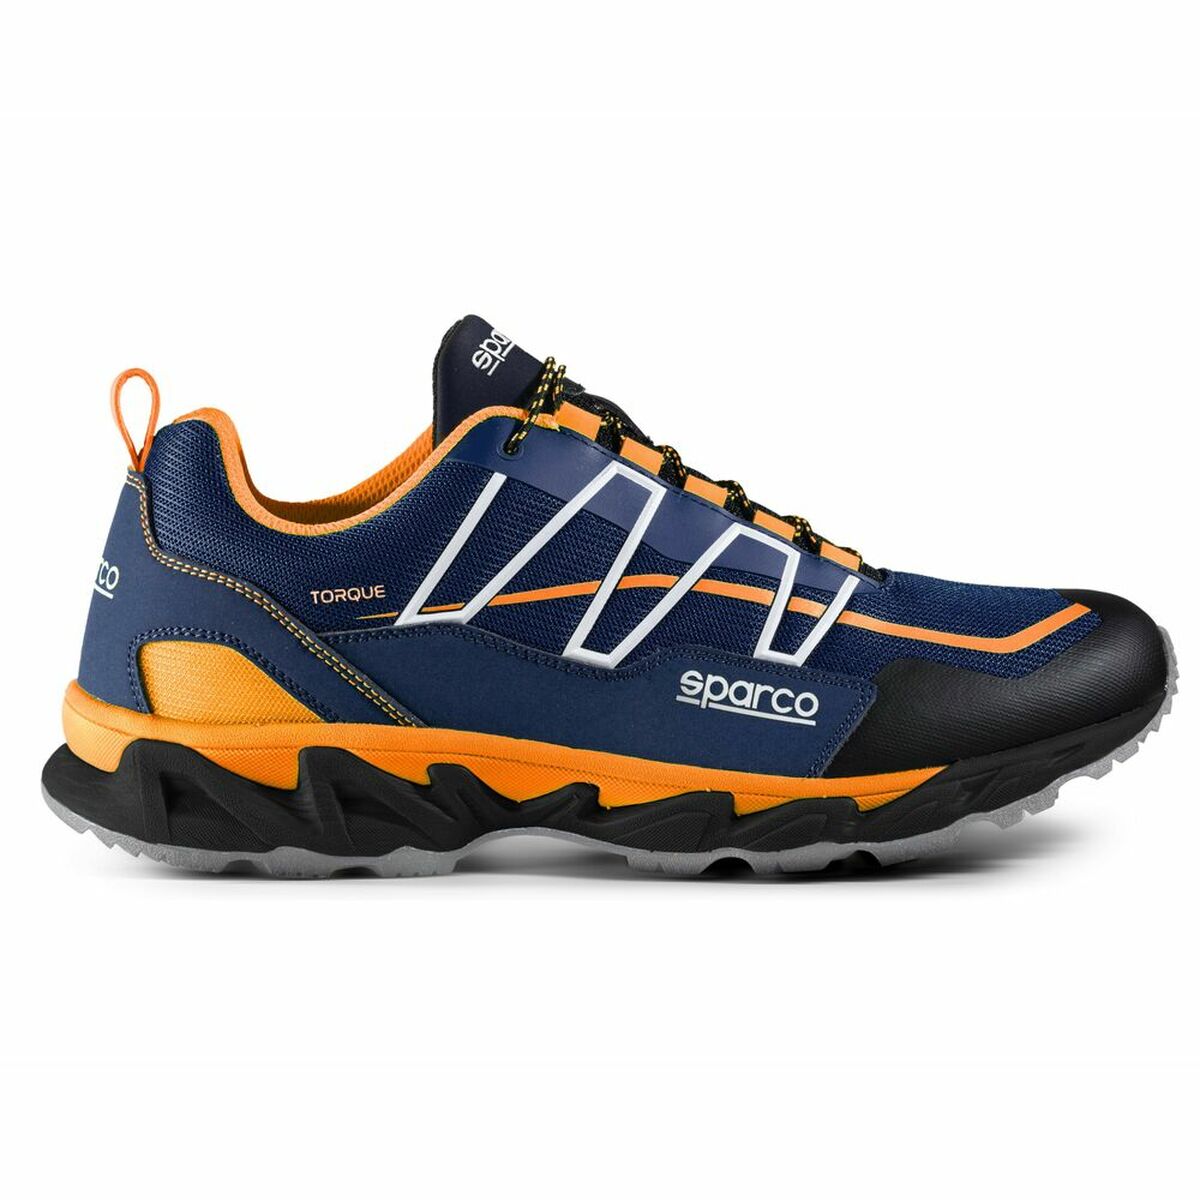 Chaussures de sécurité Sparco Torque Charade Orange Blue marine (41)